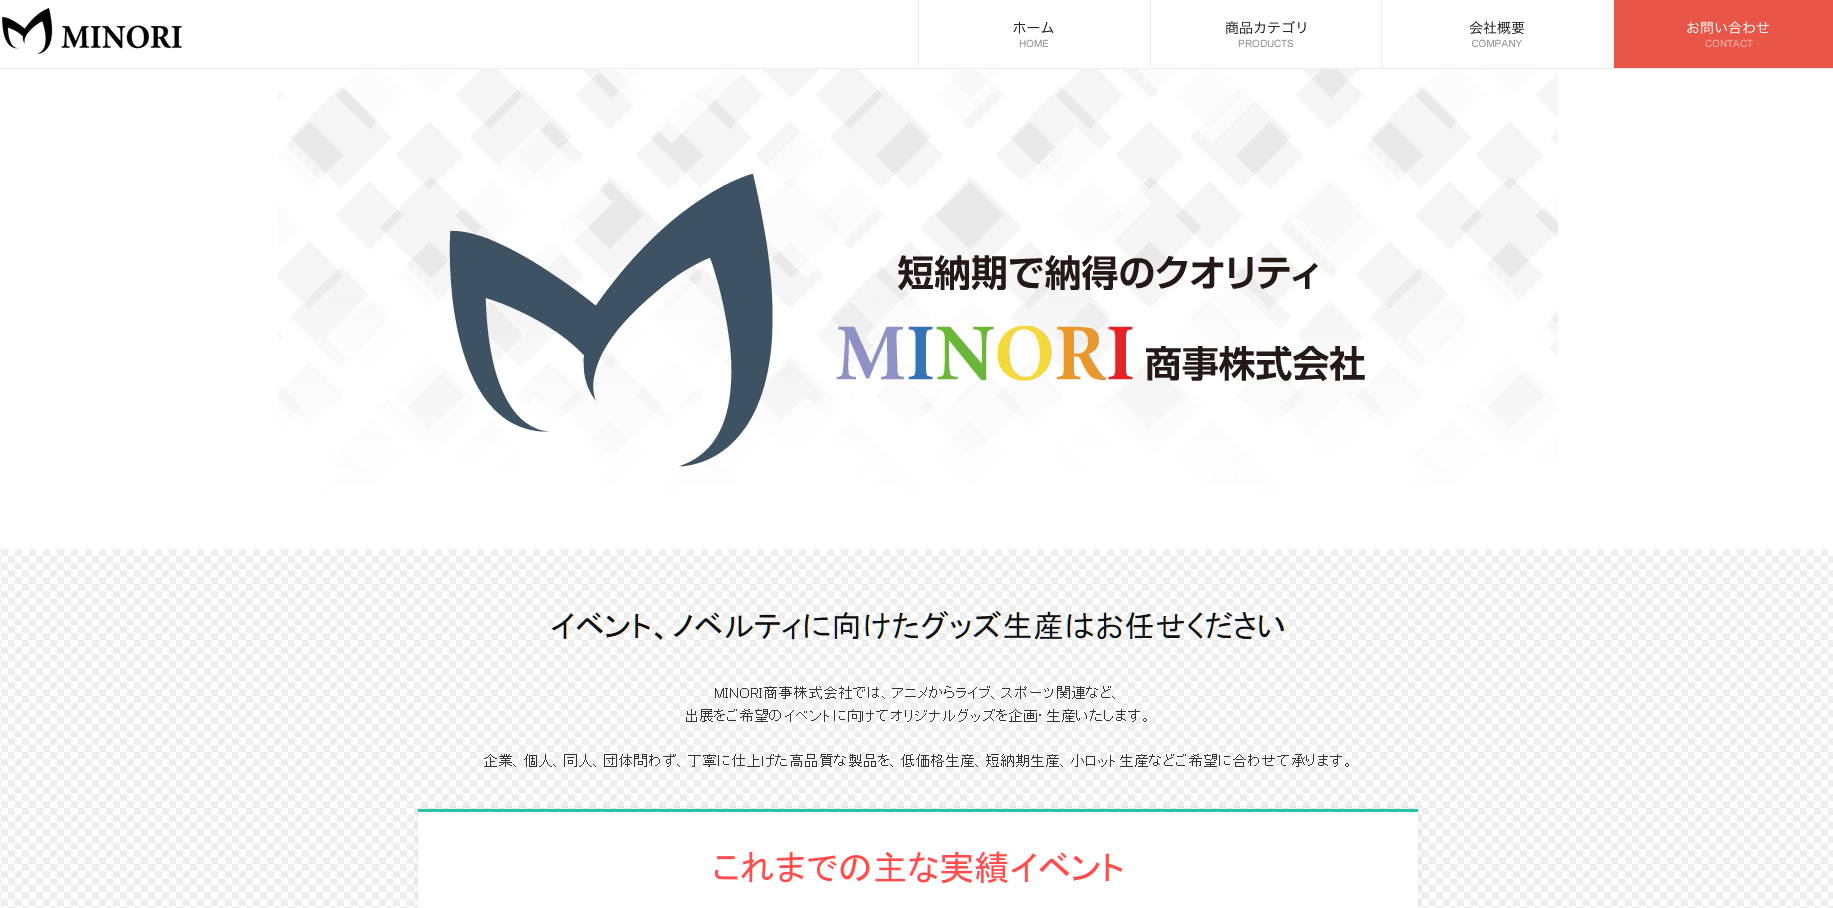 MINORI商事株式会社のMINORI商事株式会社サービス